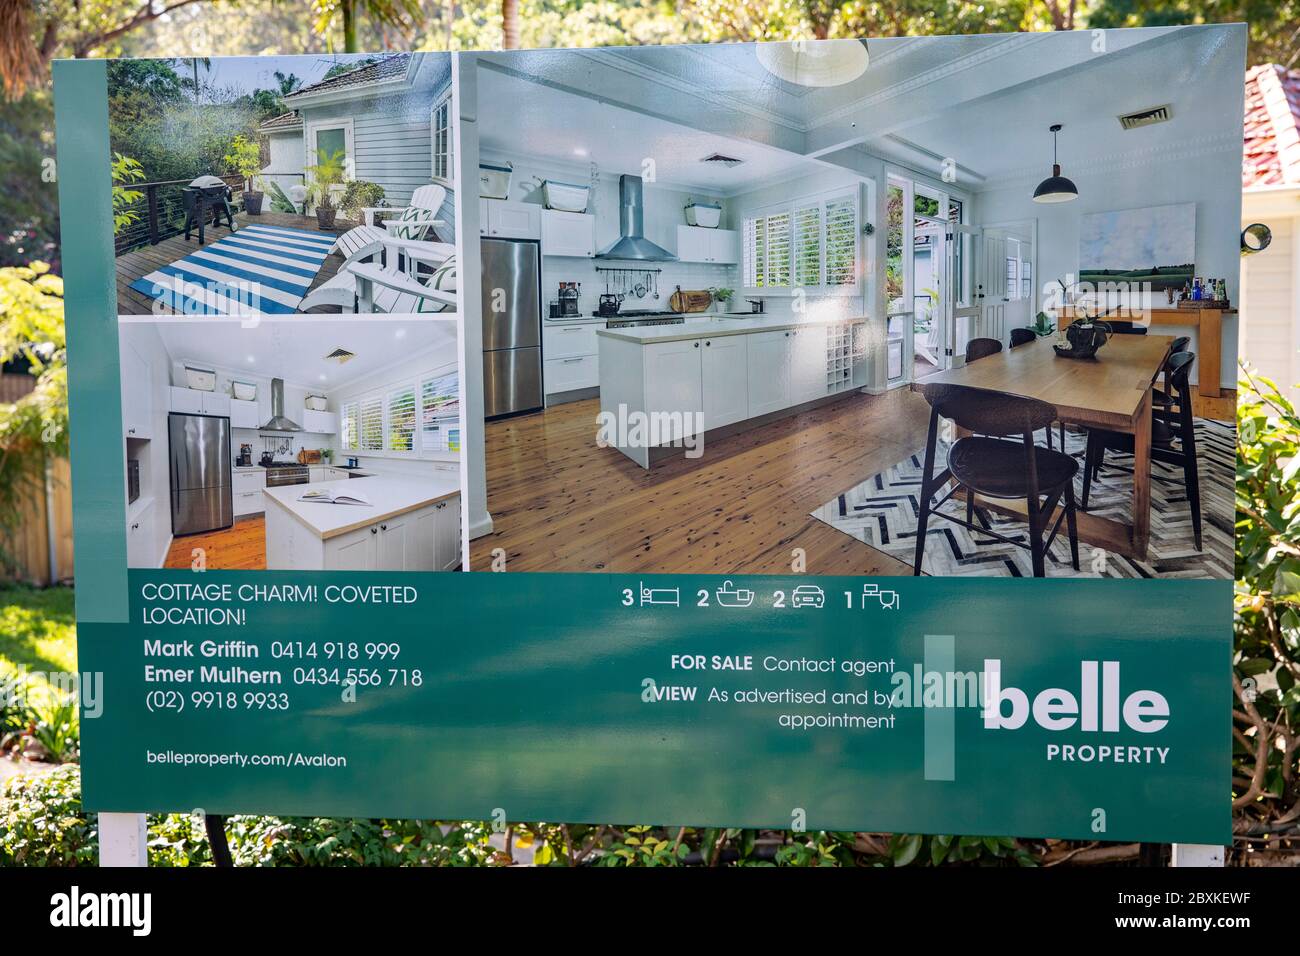 Casa australiana in vendita con marketing immobiliare bordo fuori casa, Sydney, Australia Foto Stock